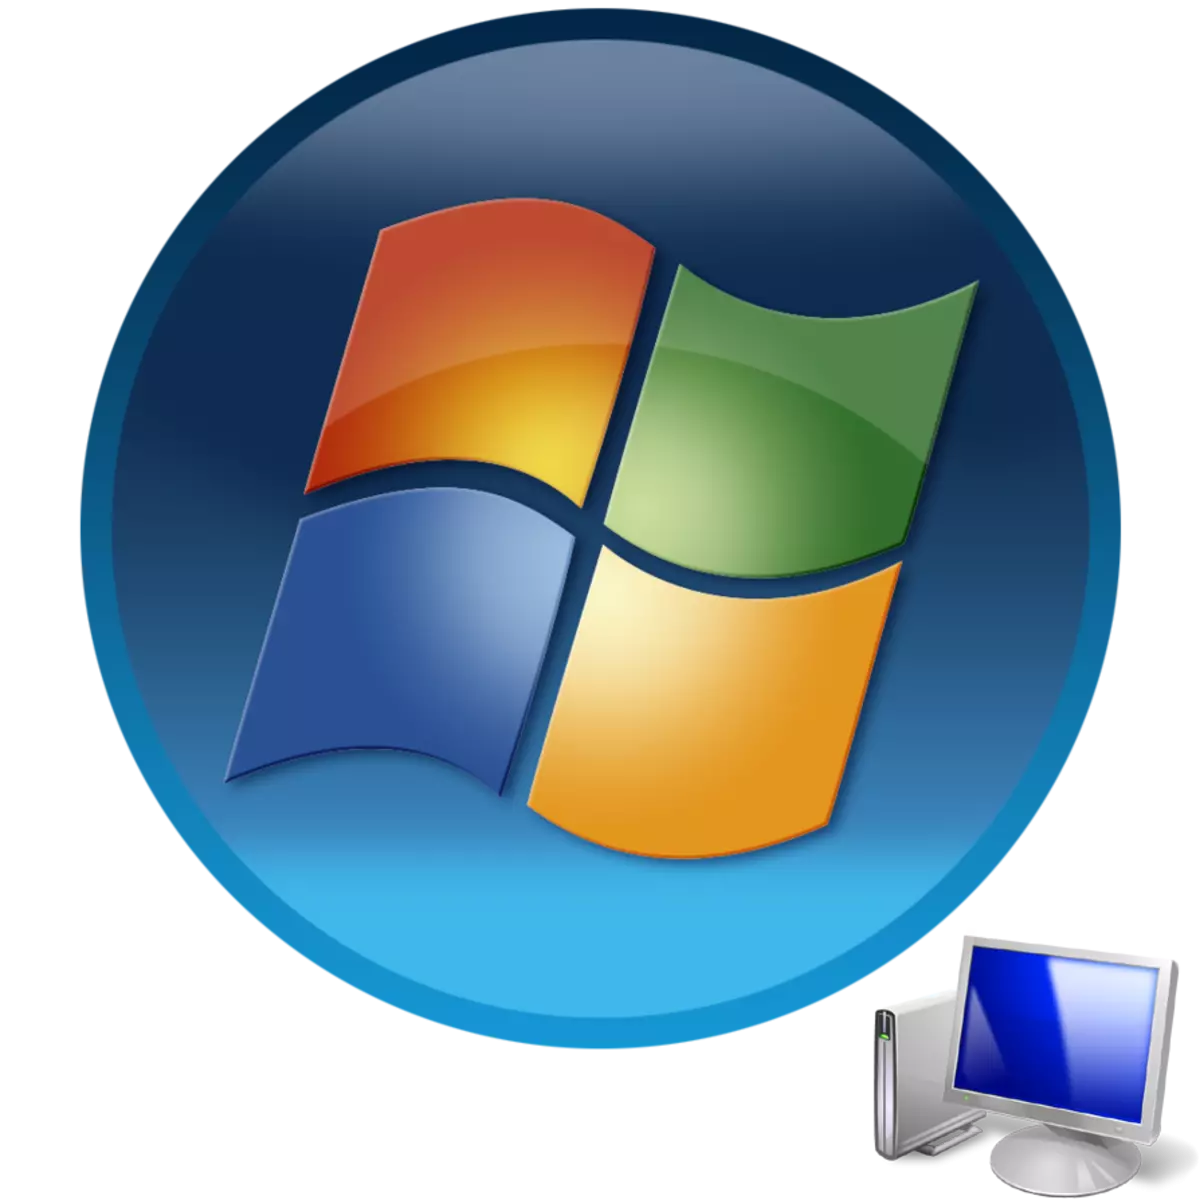 Windows 7 иштетүүчү тутуму менен компьютерди баштоо